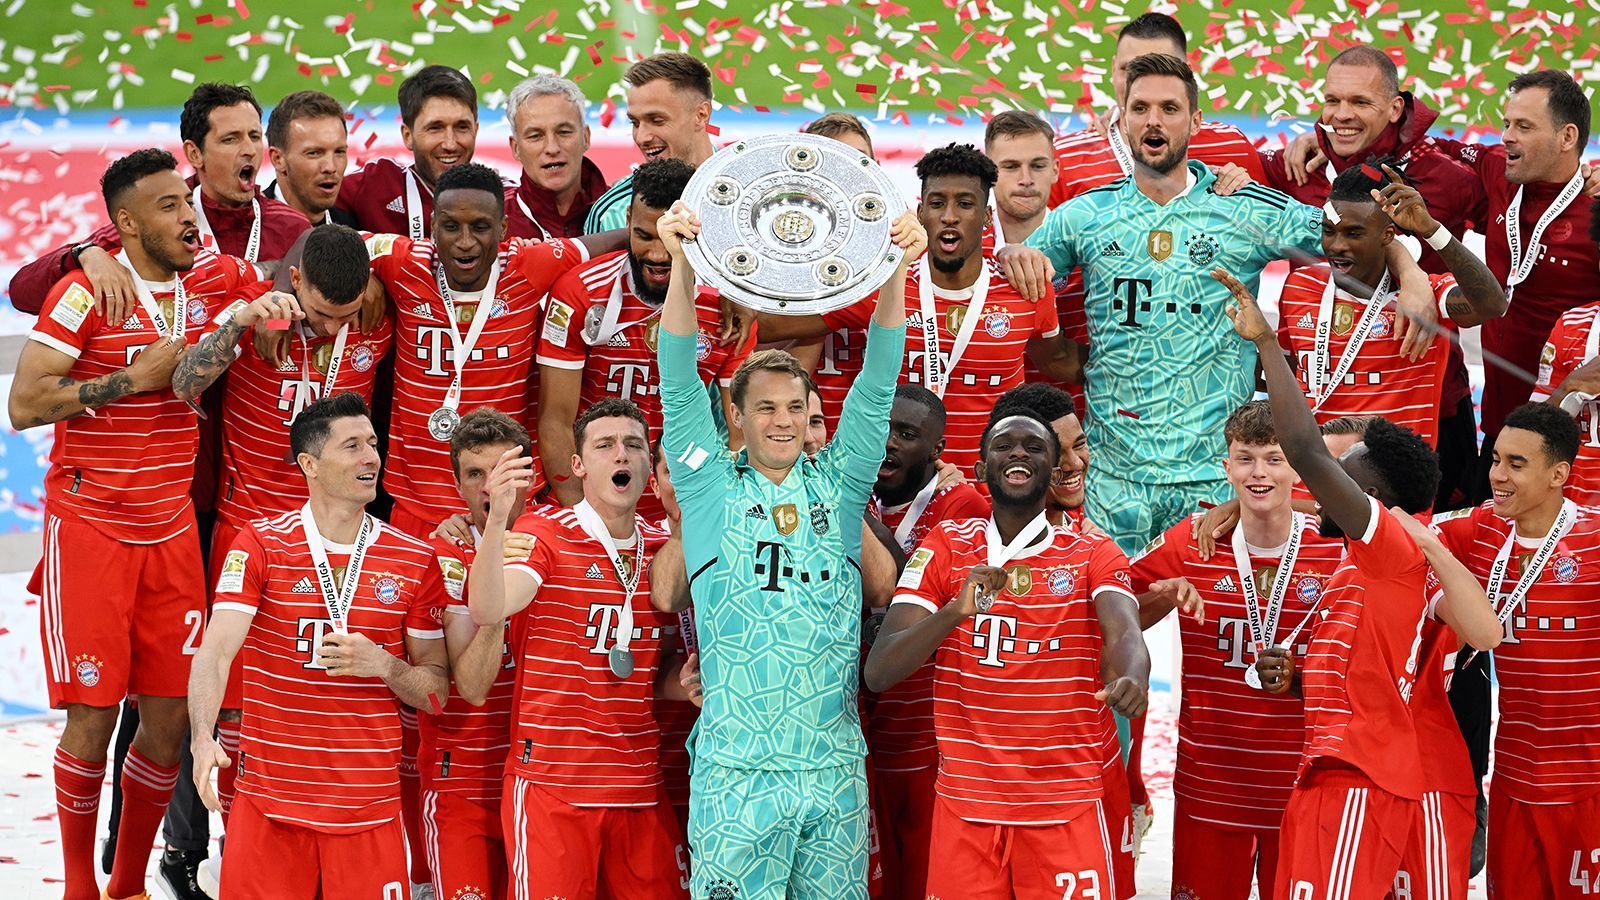 
                <strong>So feiert der FC Bayern München die 32. Meisterschaft</strong><br>
                Nach dem 2:2 gegen den VfB Stuttgart bekam der FC Bayern München die Meisterschale zum 32. Mal in der Vereins-Historie überreicht. ran zeigt die besten Bilder der Meisterfeier. 
              